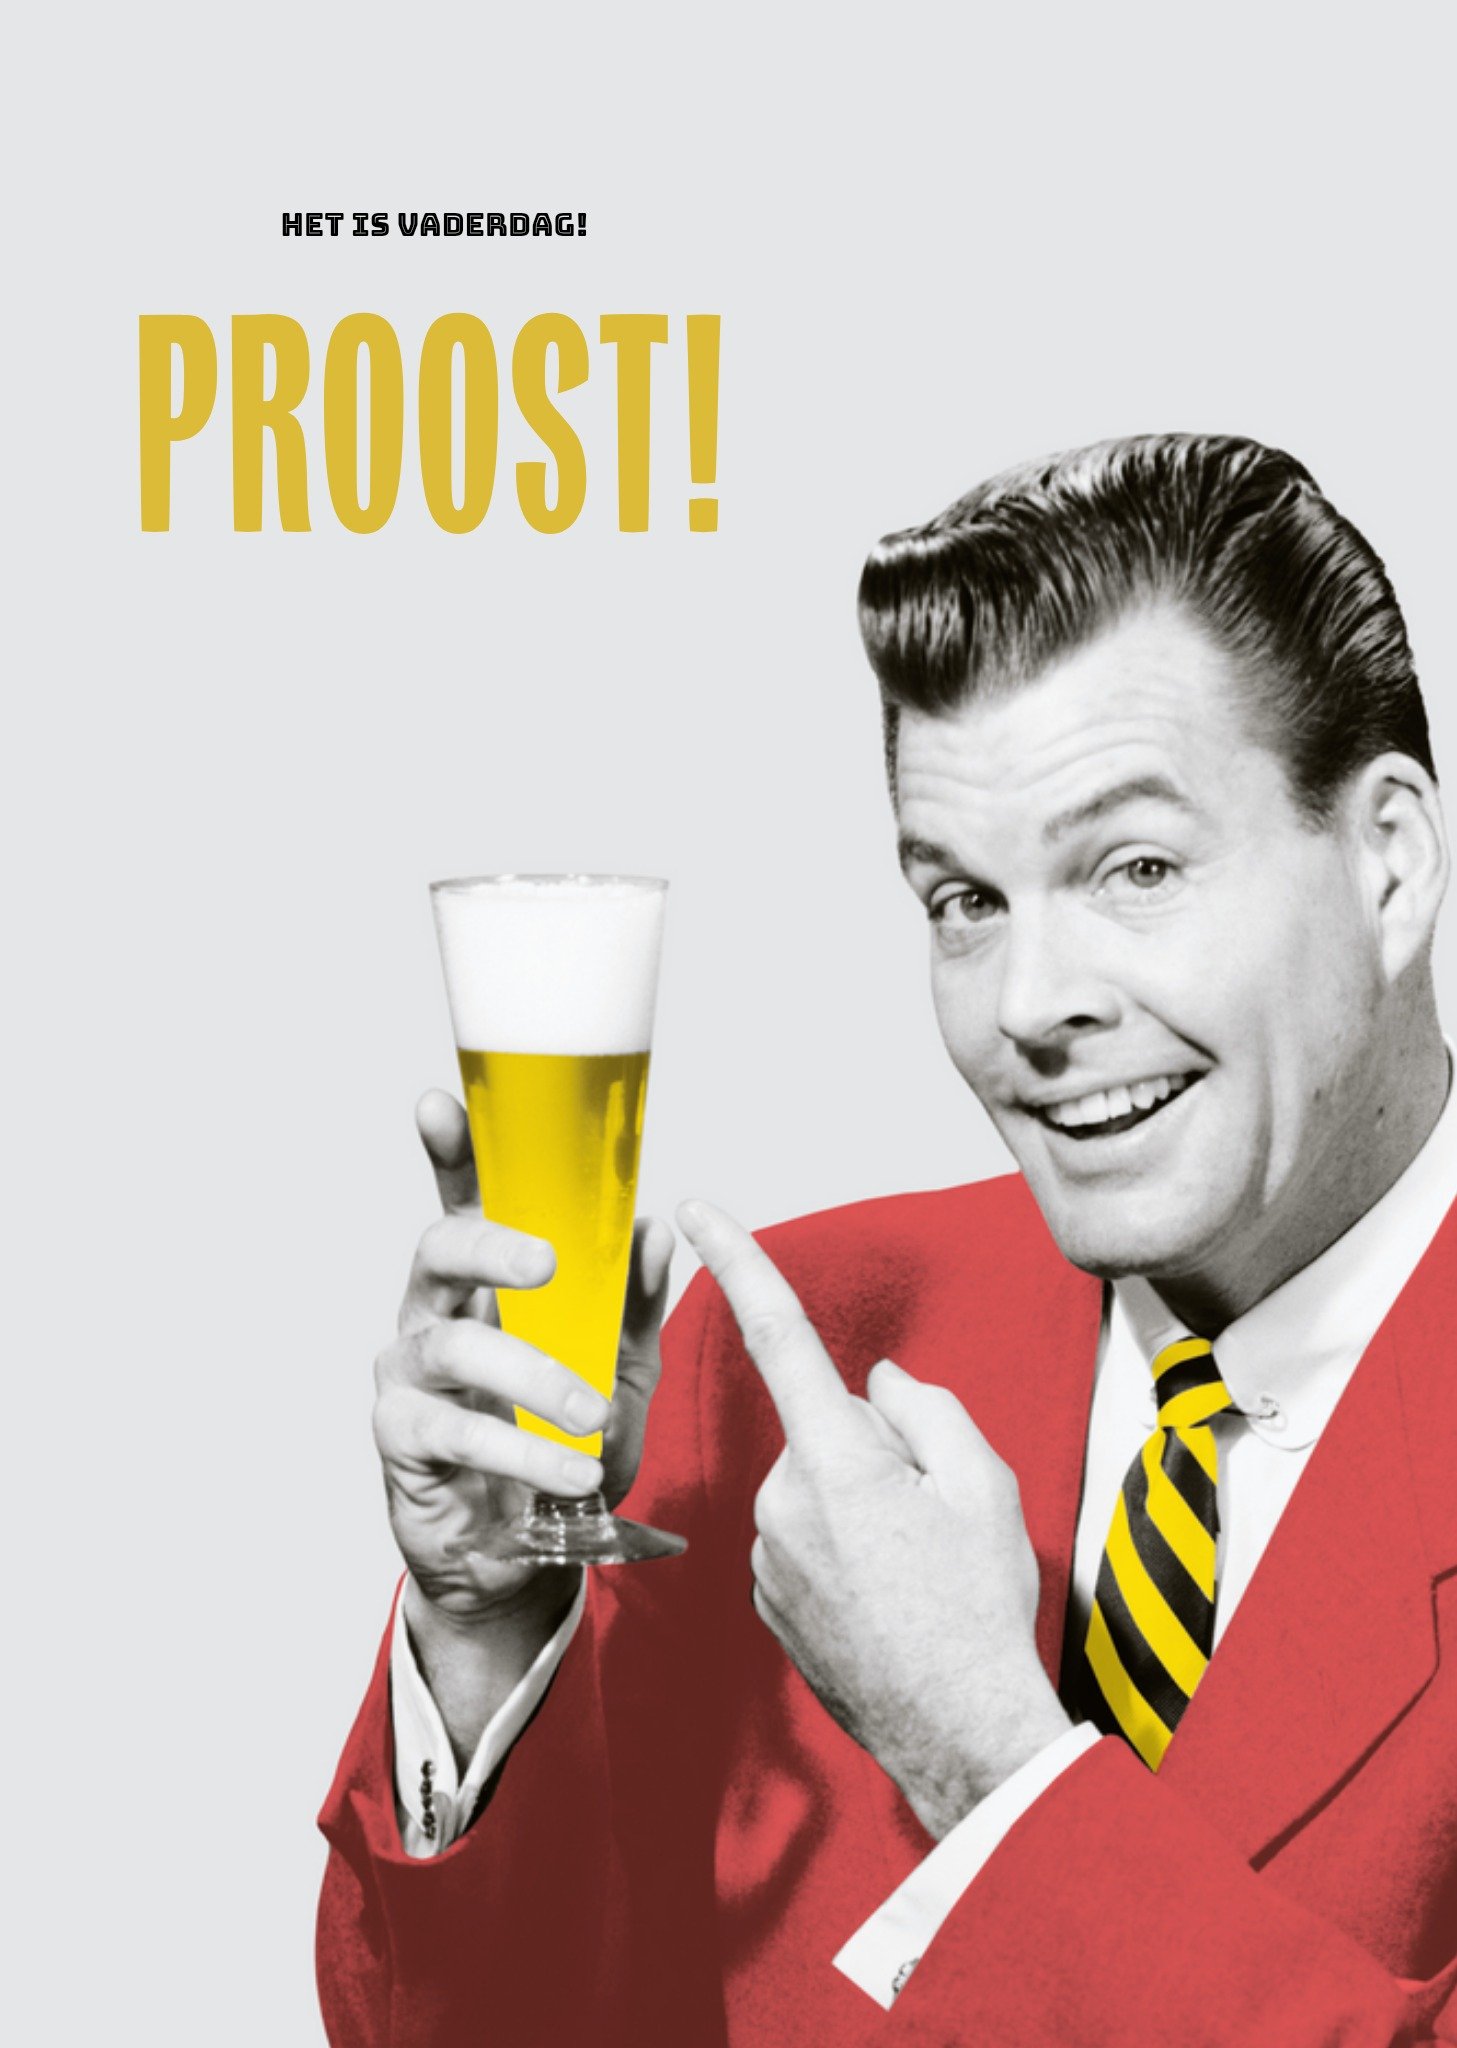 TMS - Vaderdagkaart - proost - bier